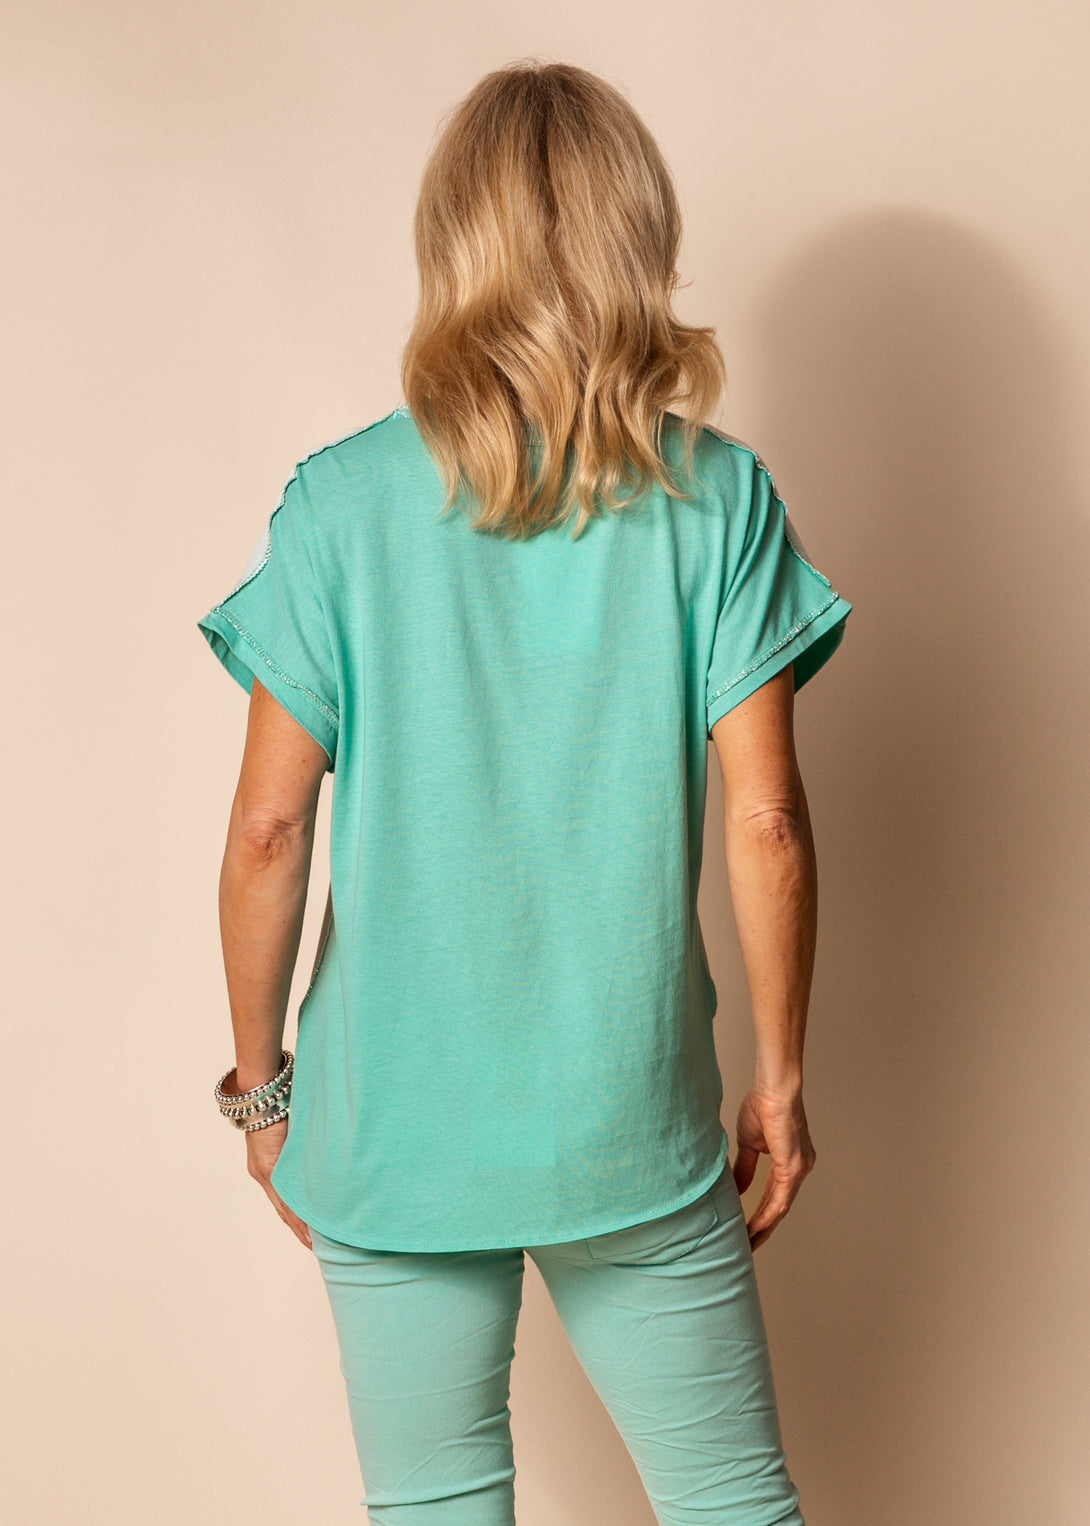 Merino Cotton Blend Top in Sea Green - Imagine Fashion